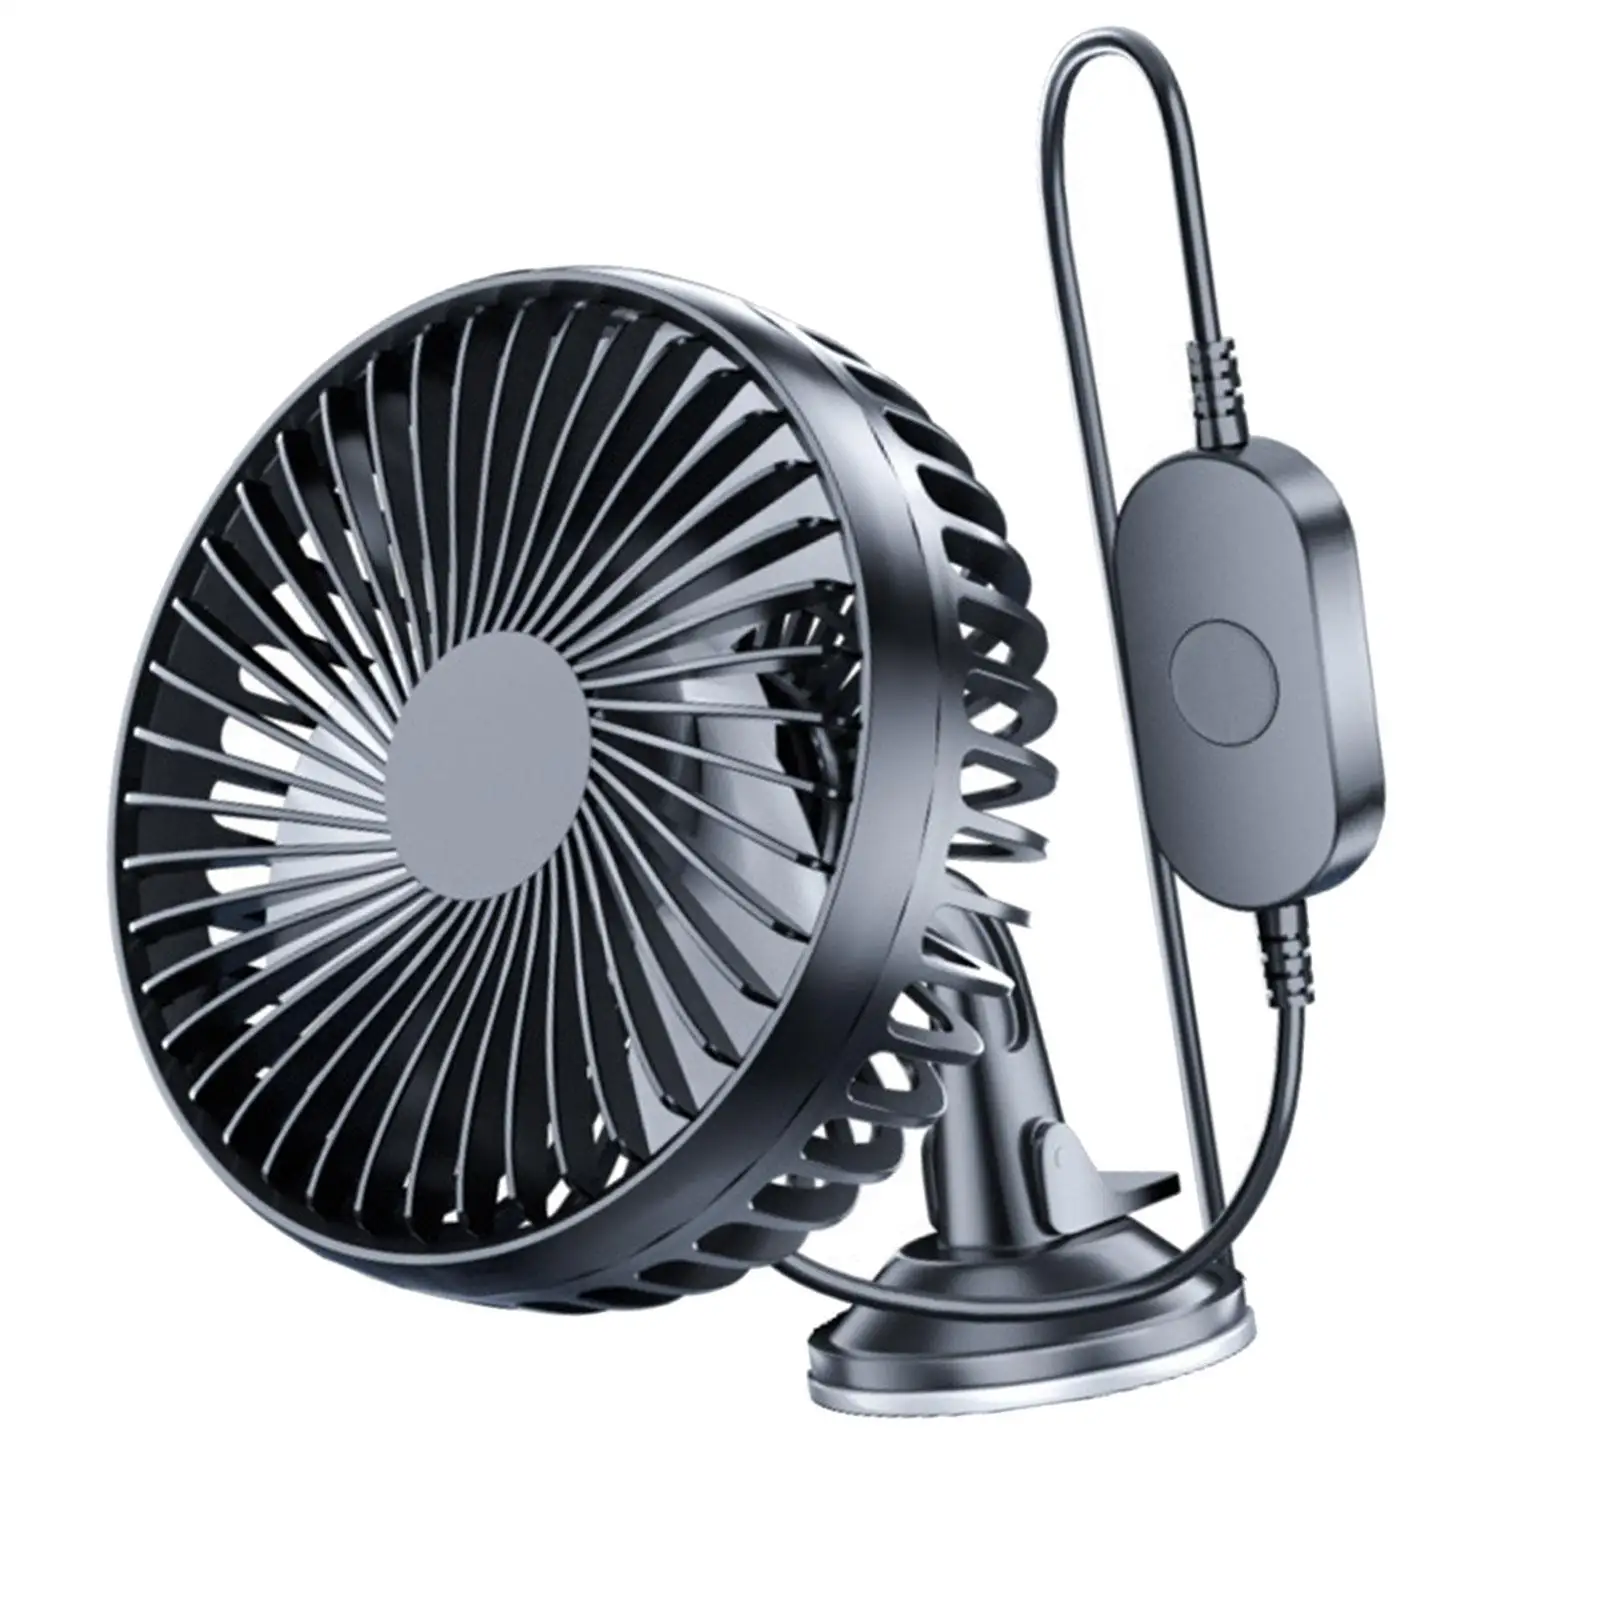 Electric Car Cooling Fan 12V 24V USB Sturdy Easily Install Black for Automobile Office and Home Use Adjustable Tilt Adjustment